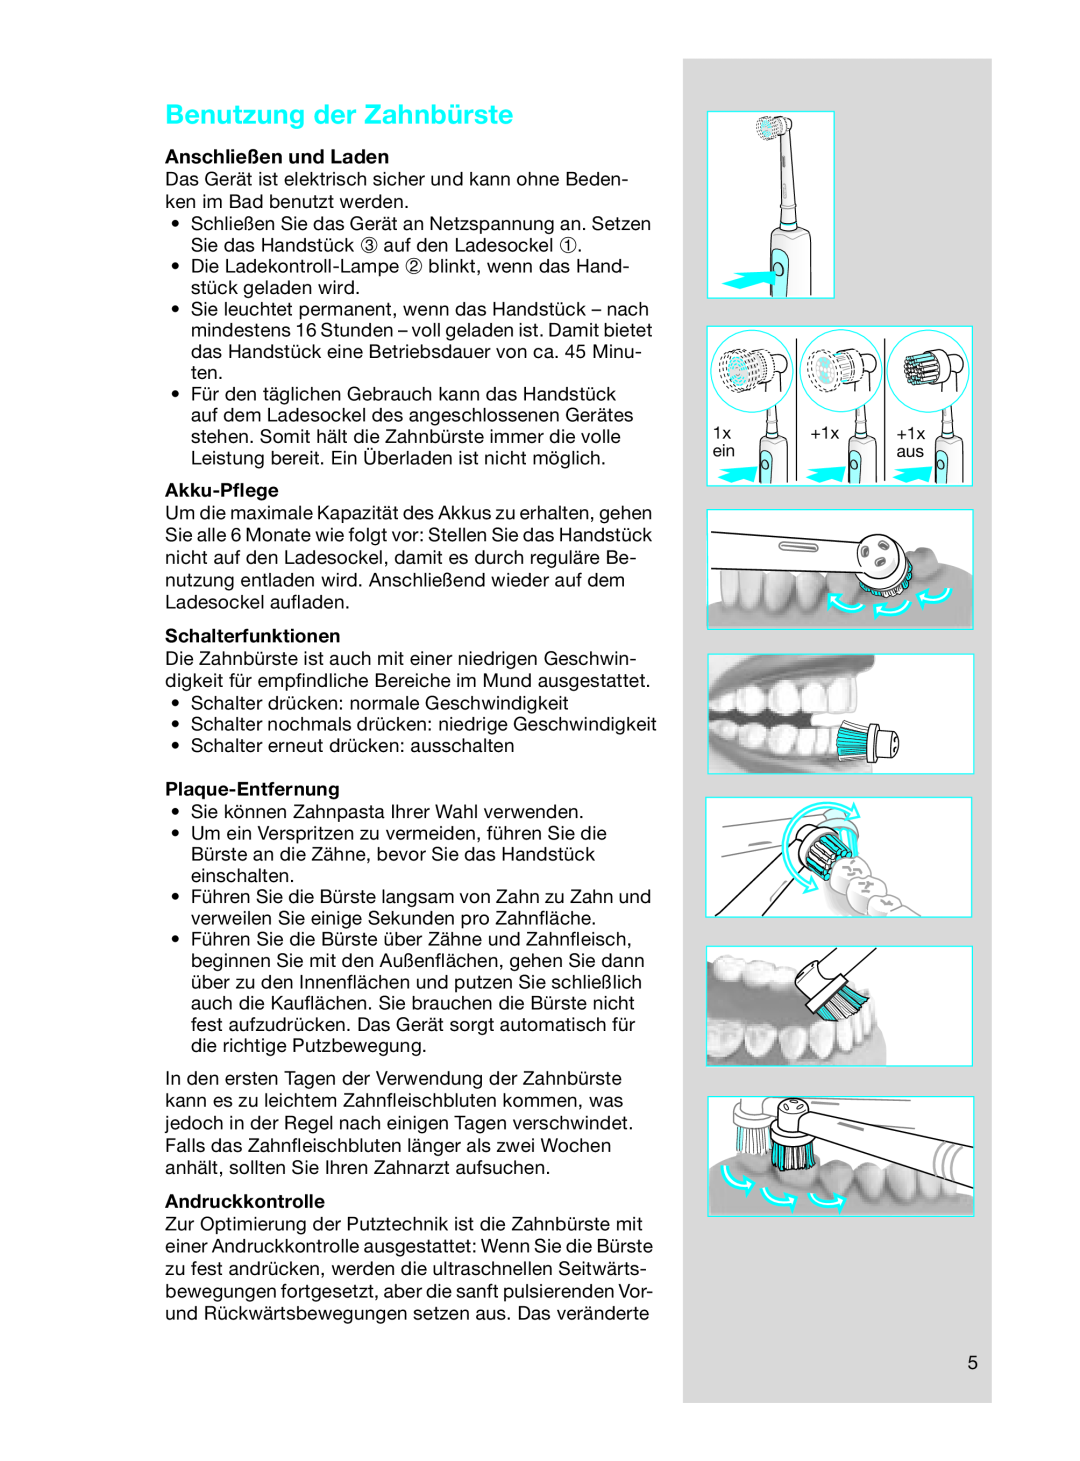 Braun OC17525 manual Benutzung der Zahnbürste, Anschließen und Laden, Akku-Pﬂege, Schalterfunktionen, Plaque-Entfernung 